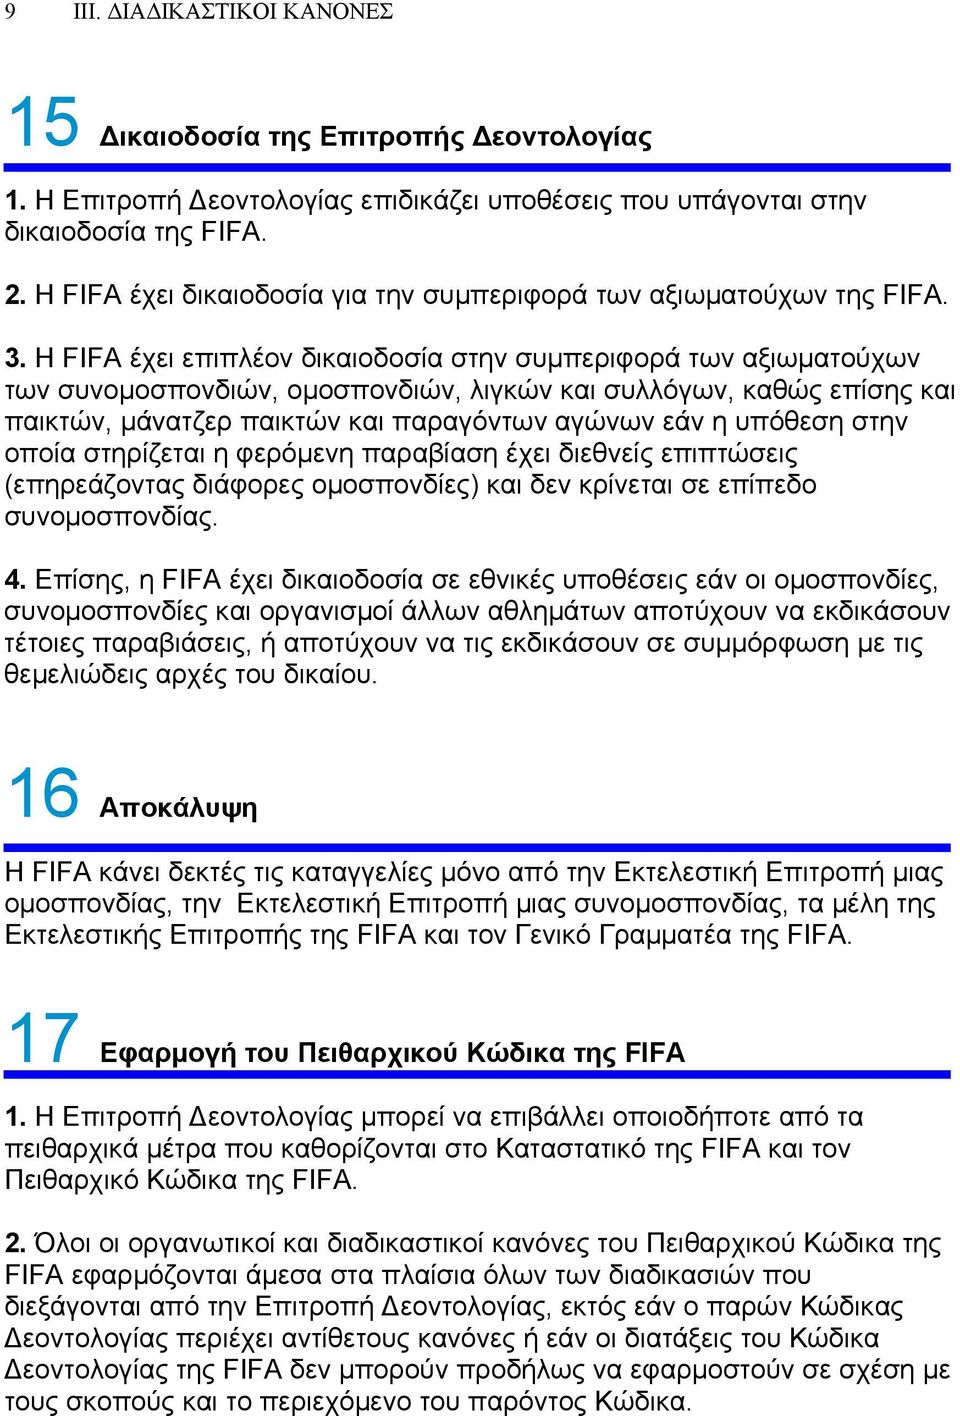 Η FIFA έχει επιπλέον δικαιοδοσία στην συμπεριφορά των αξιωματούχων των συνομοσπονδιών, ομοσπονδιών, λιγκών και συλλόγων, καθώς επίσης και παικτών, μάνατζερ παικτών και παραγόντων αγώνων εάν η υπόθεση